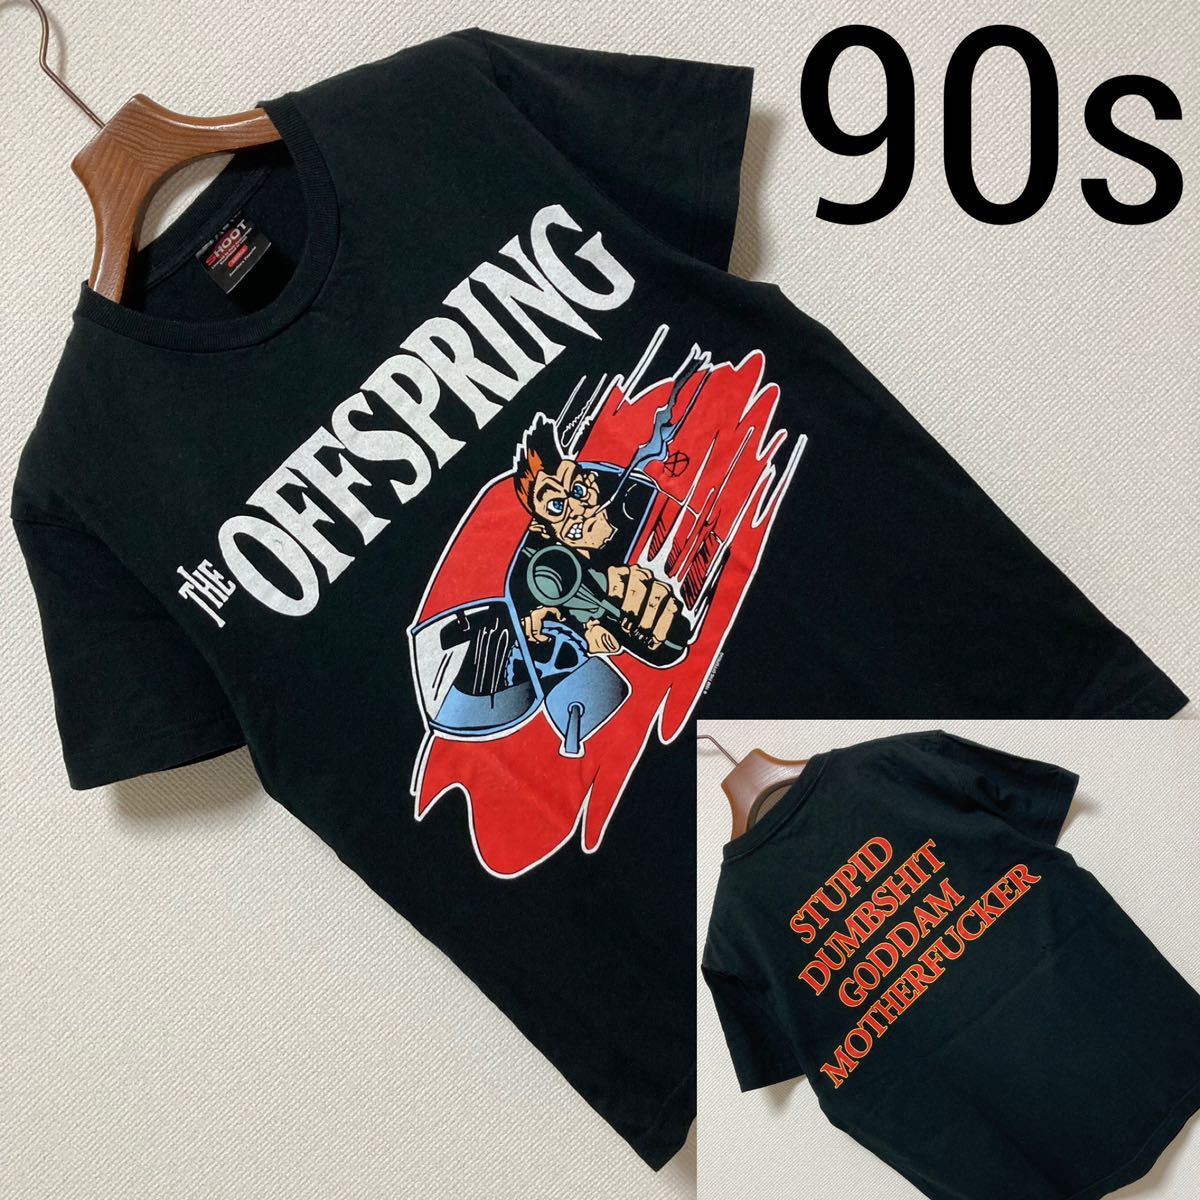 90s Vintage■THE OFFSPRING■バンT Tシャツ S 黒 ブラック オフスプリング 1998 コピーライト SMASH BAD  HABIT